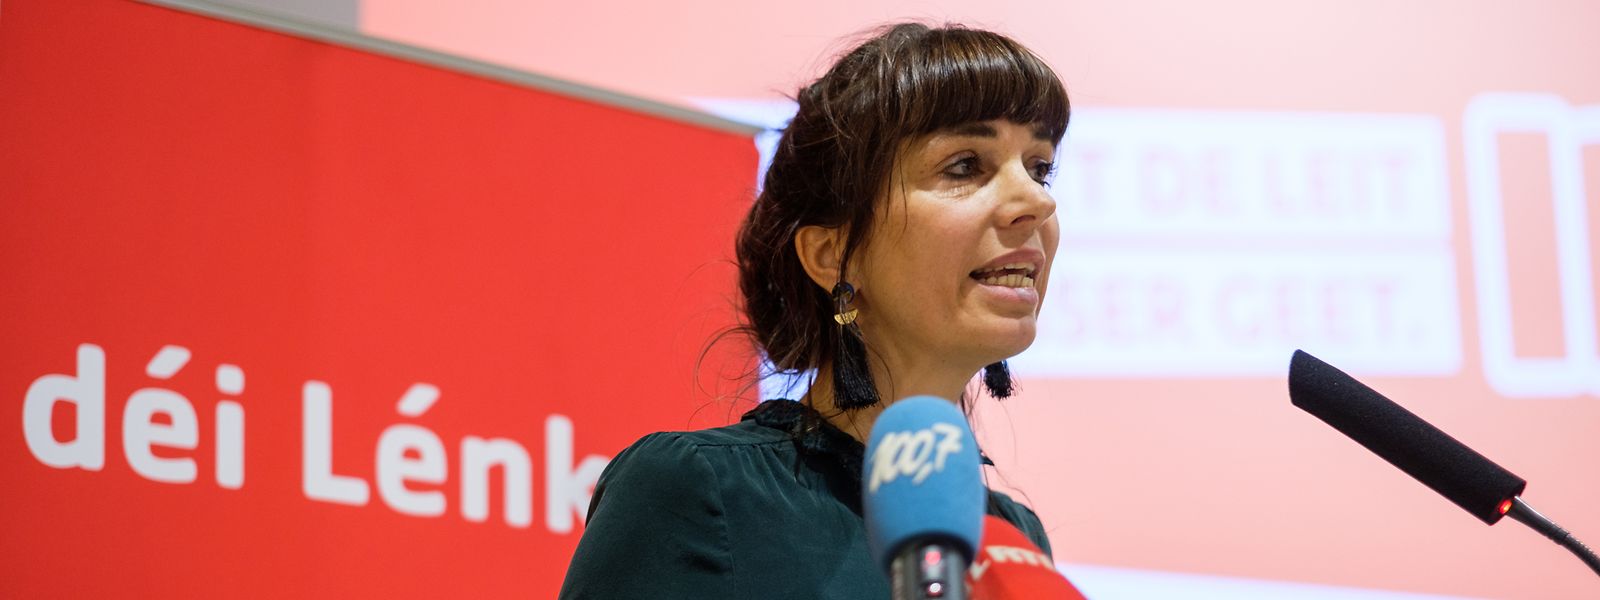 Déi Lénk würden den Minderheiten eine Stimme verleihen, betont die Abgeordnete Nathalie Oberweis.